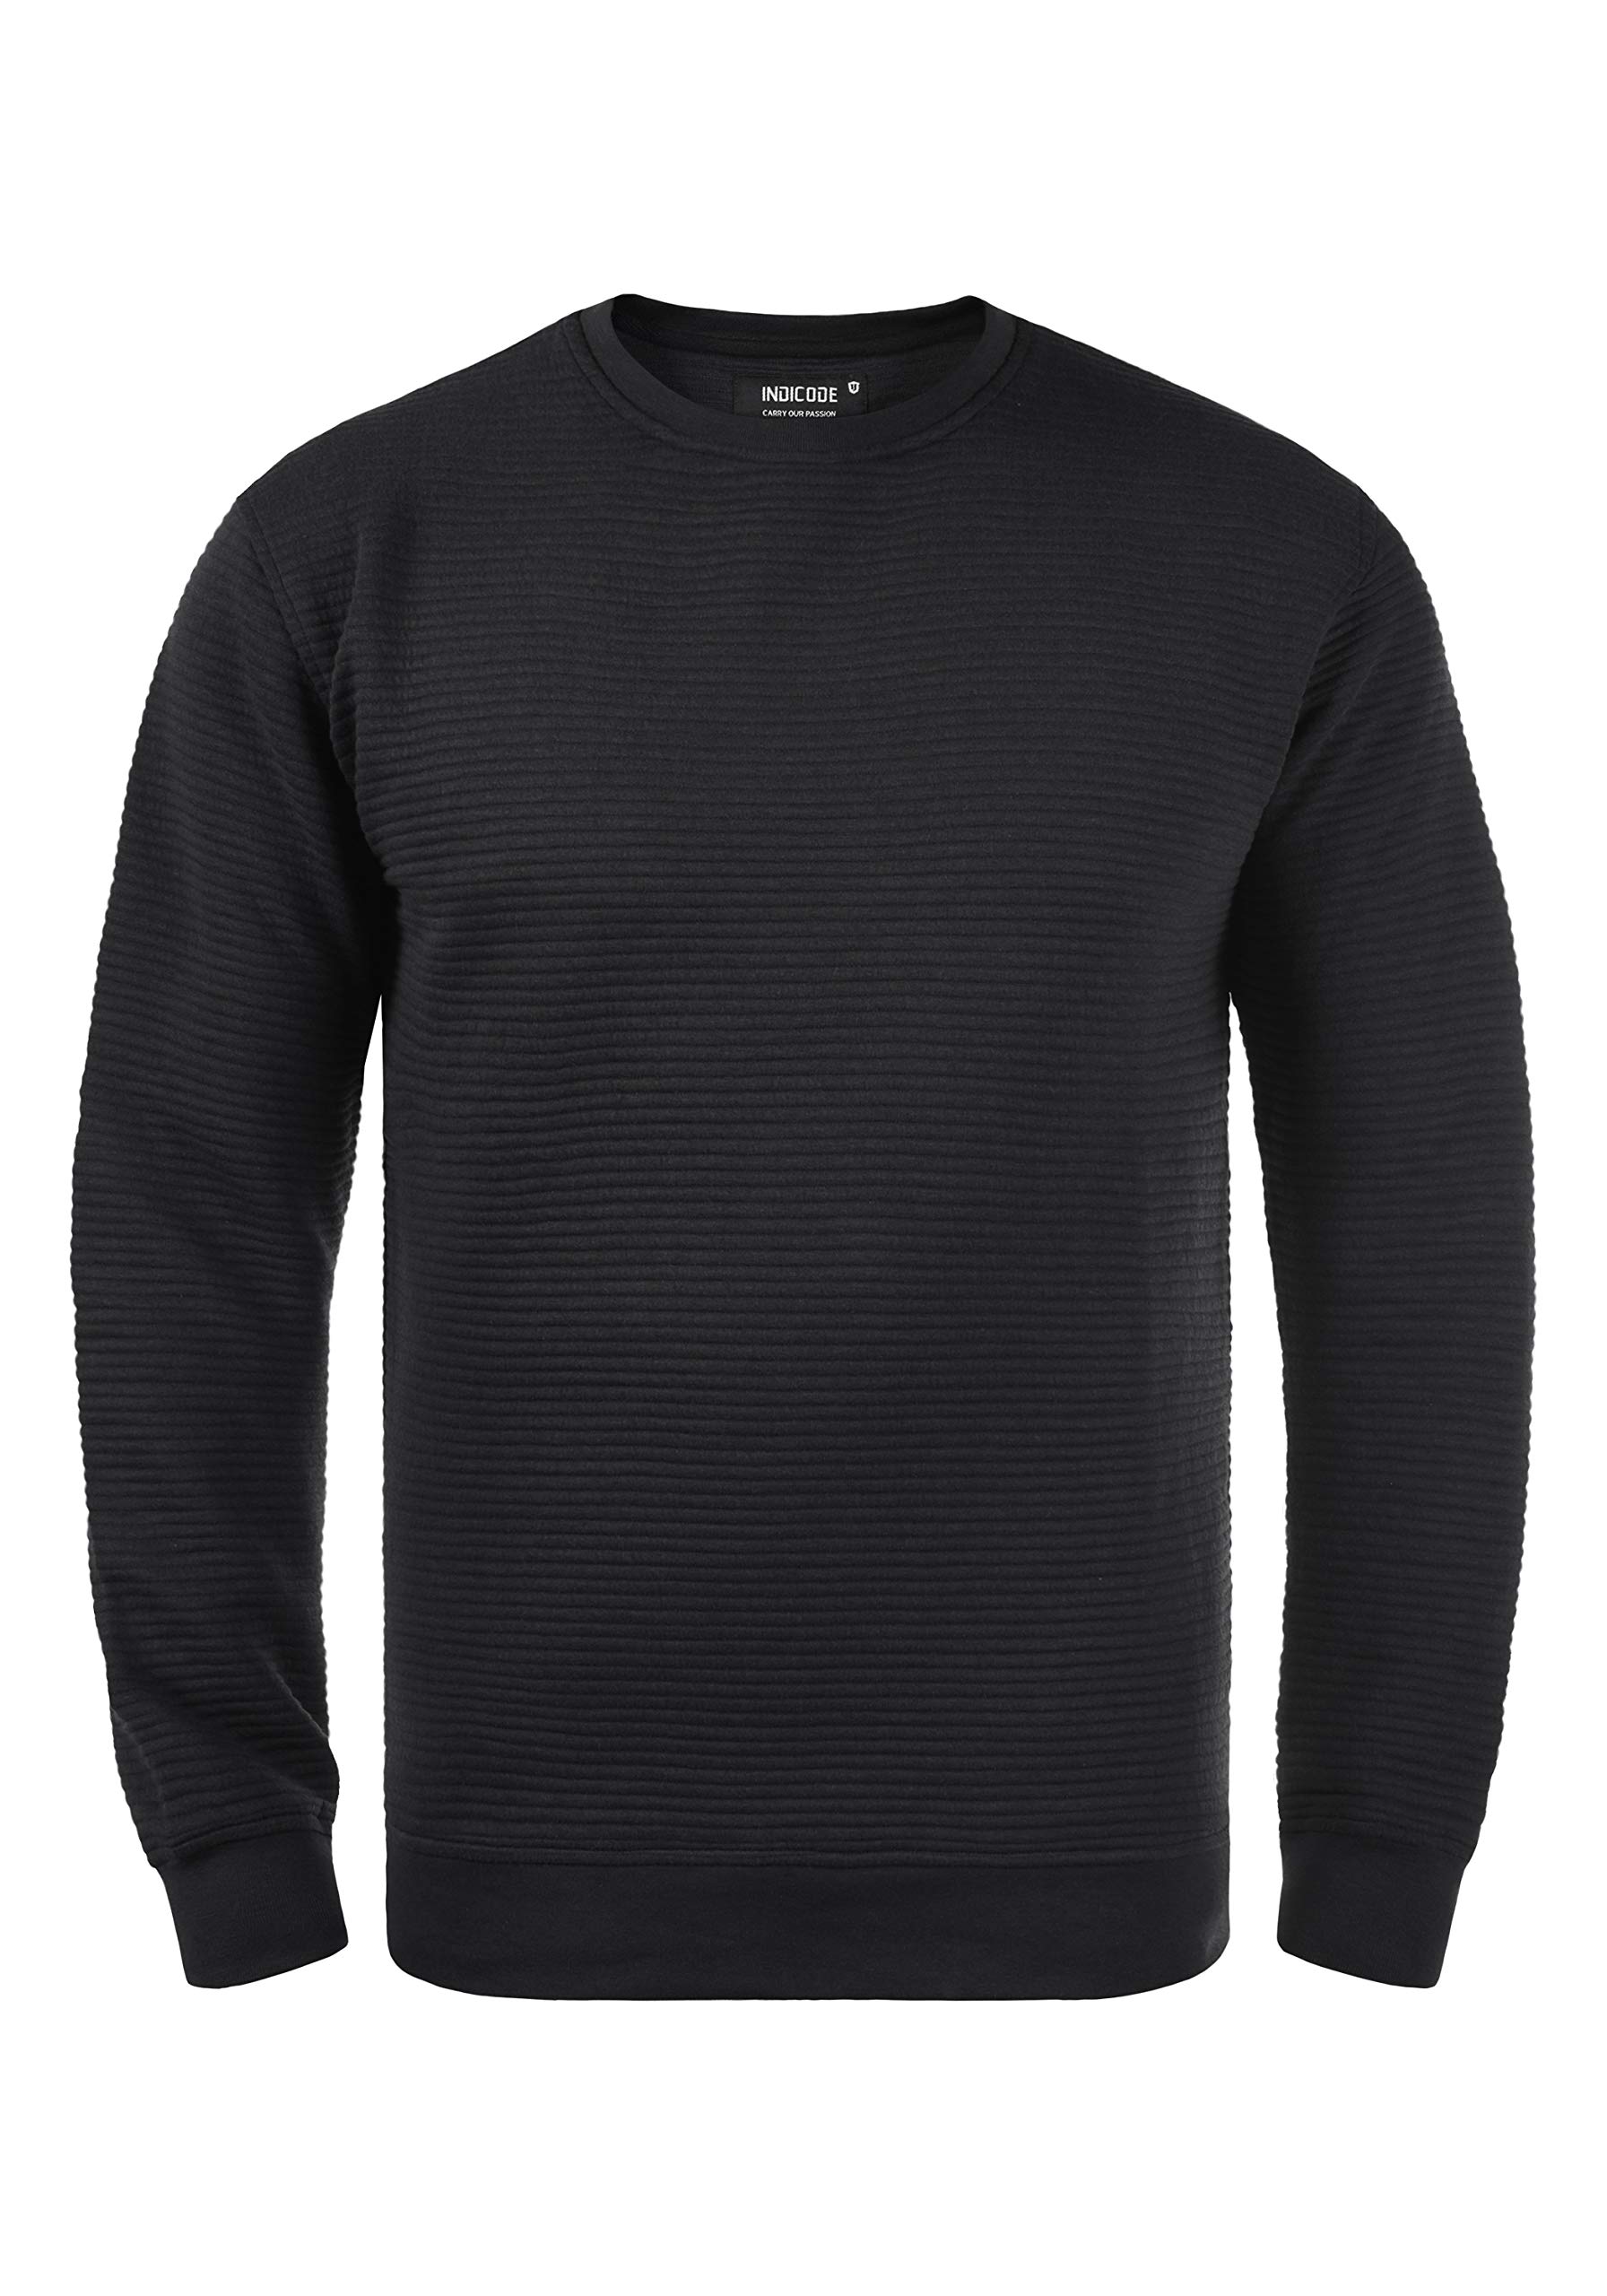 Indicode Bronn Herren Sweatshirt Pullover Pulli mit Rundhalsausschnitt, Größe:L, Farbe:Black (999)